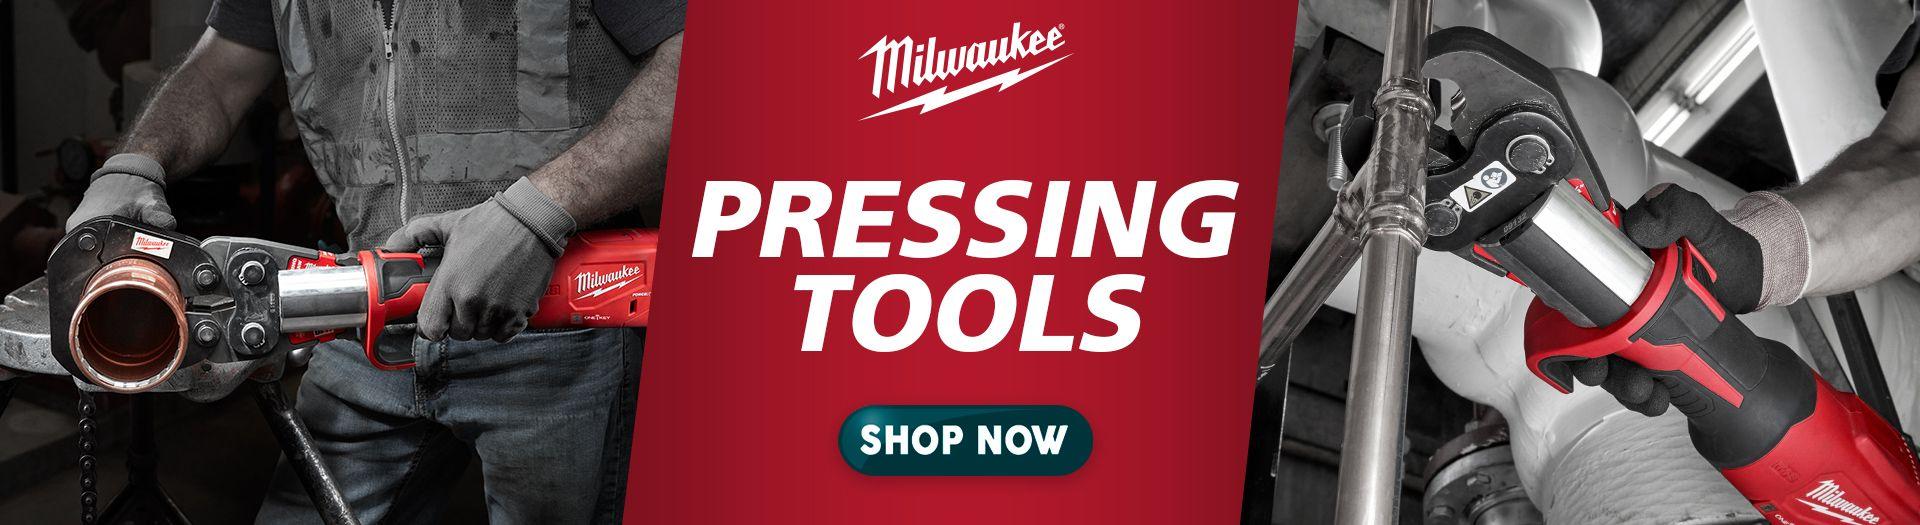 Milwaukee Pressing Tools